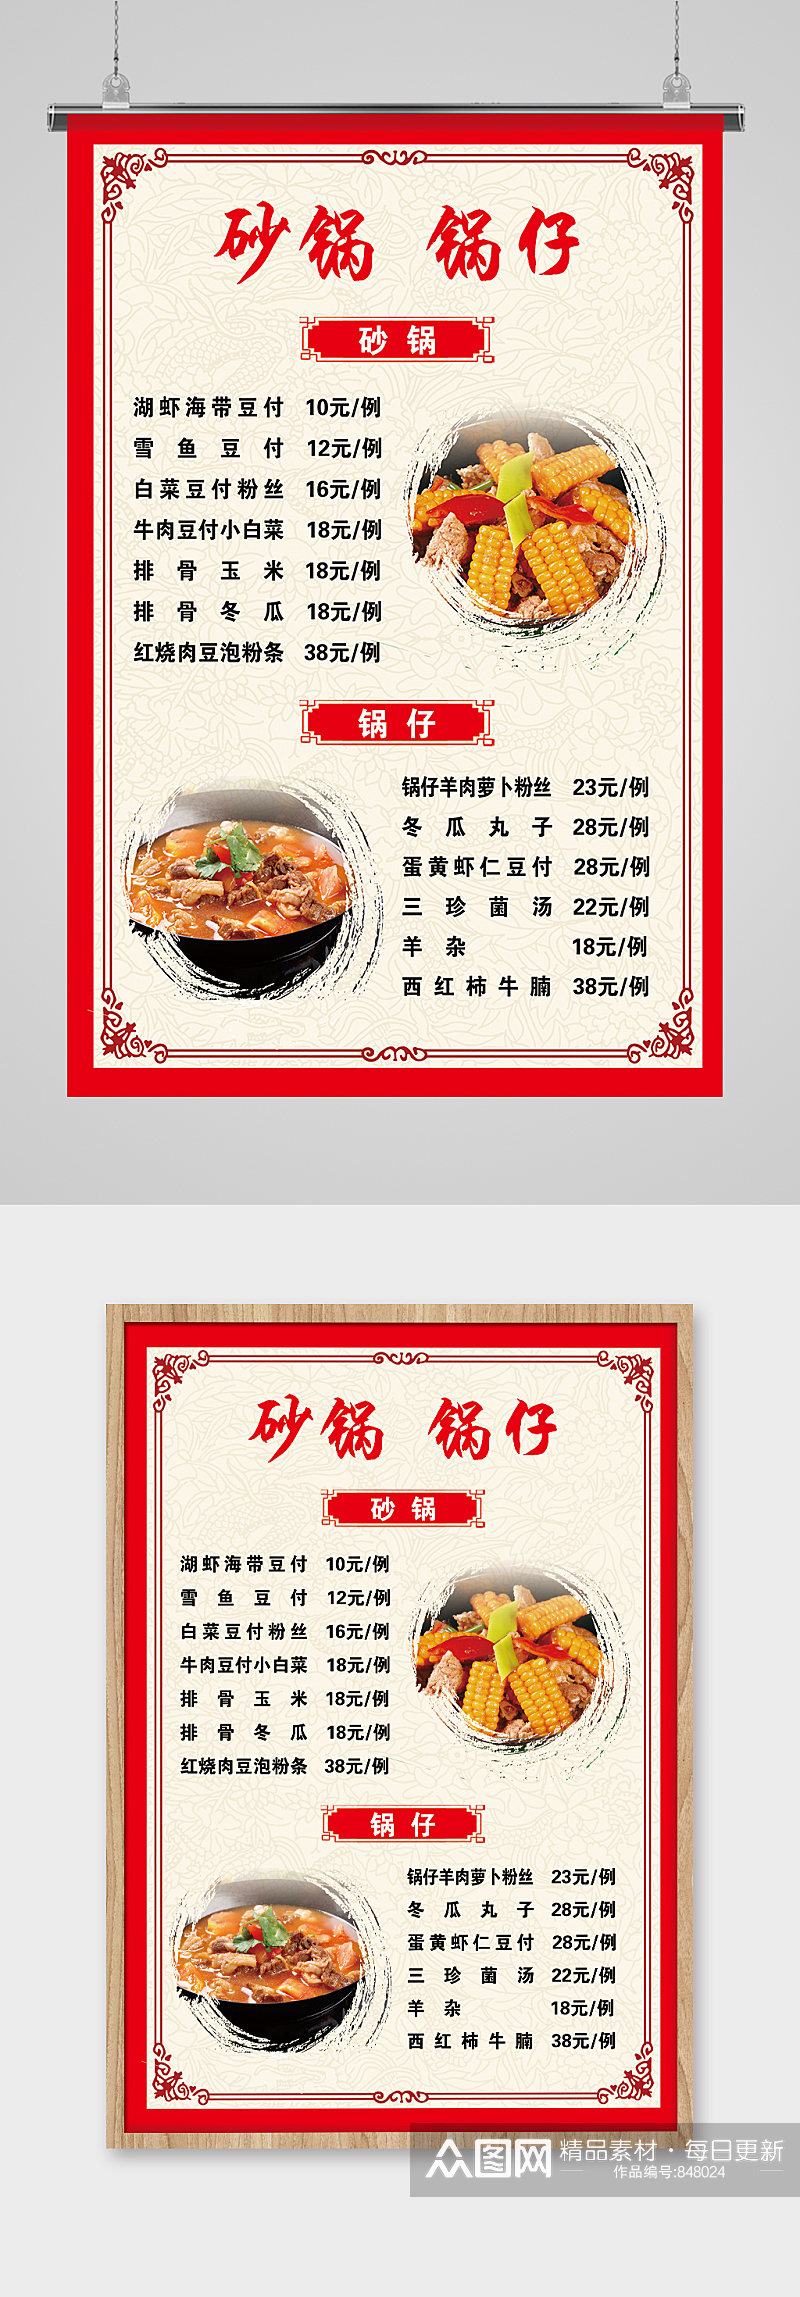 砂锅锅仔菜单图片素材